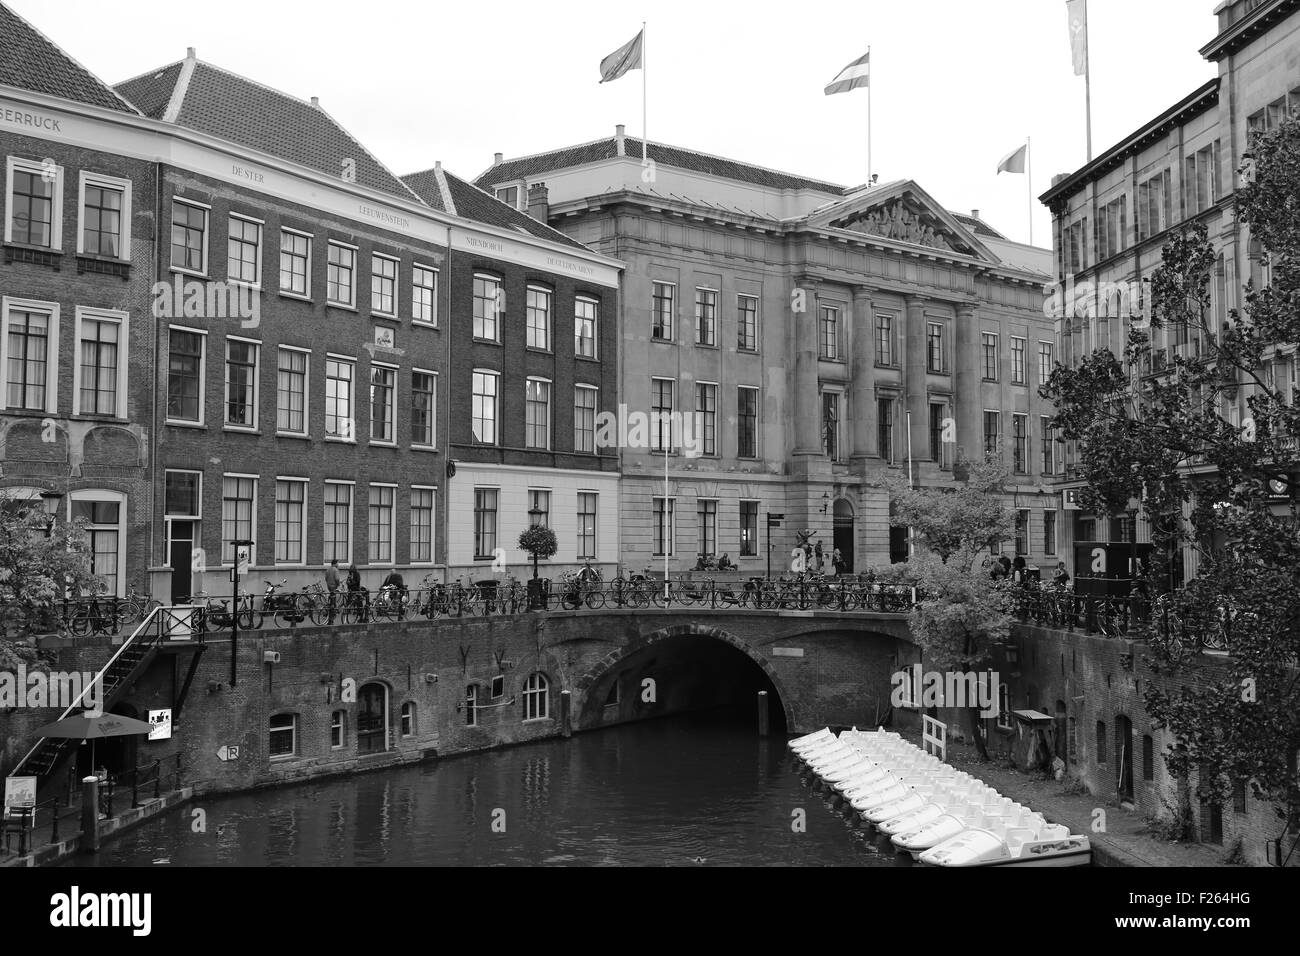 Utrecht & Canals, Holland Stock Photo